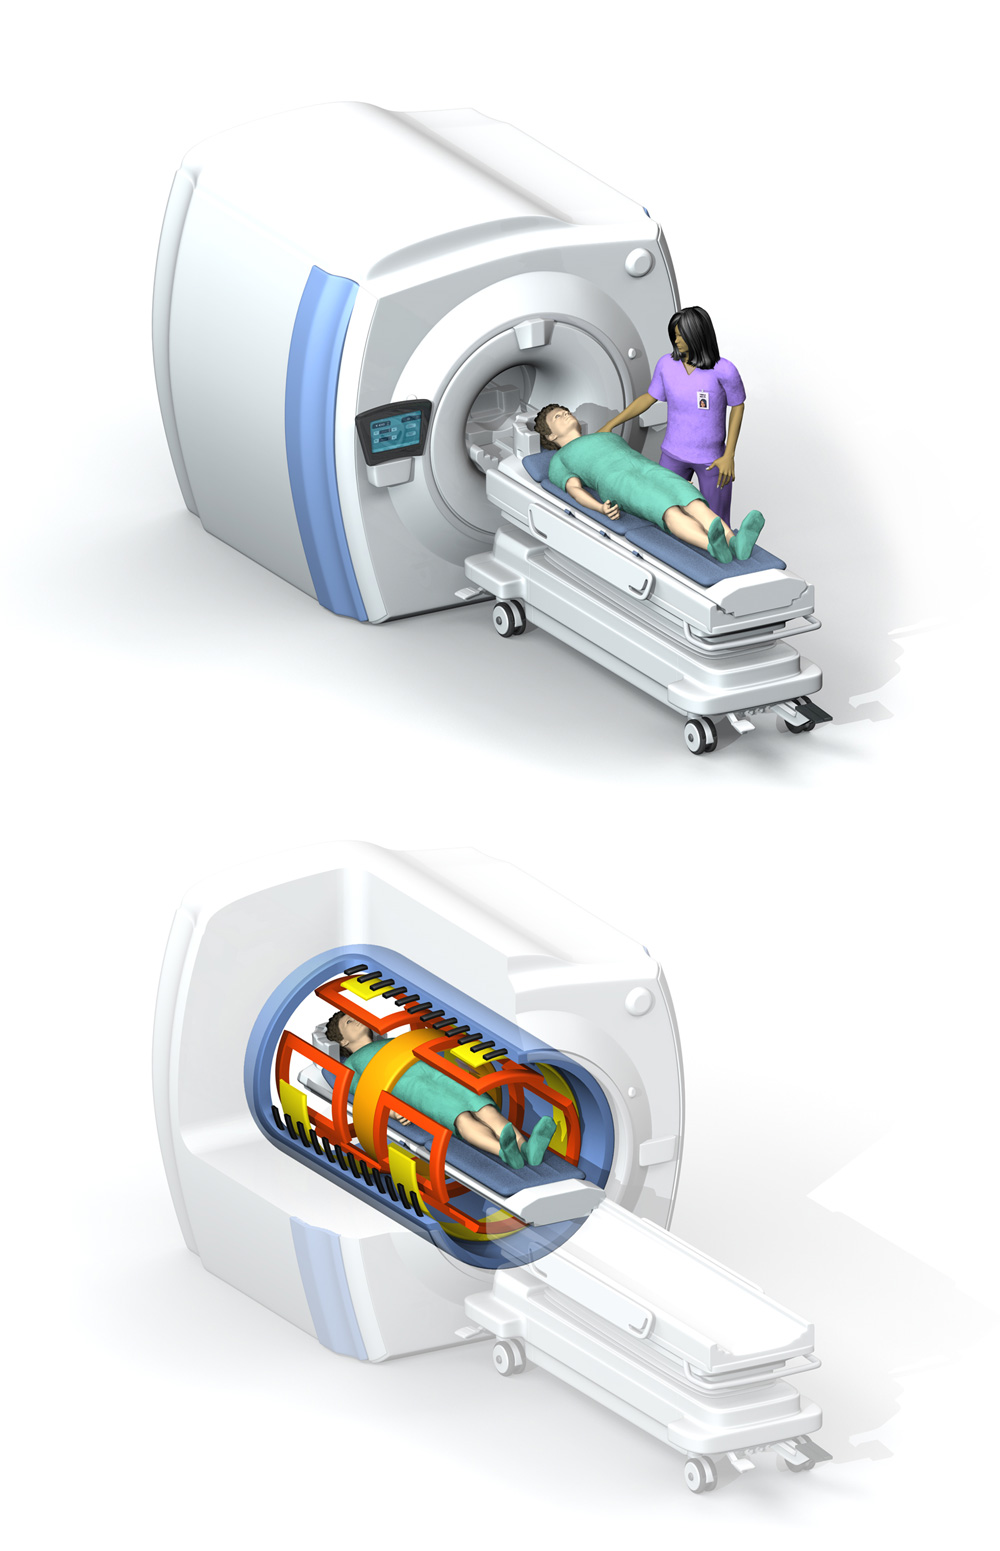 MRI infographic